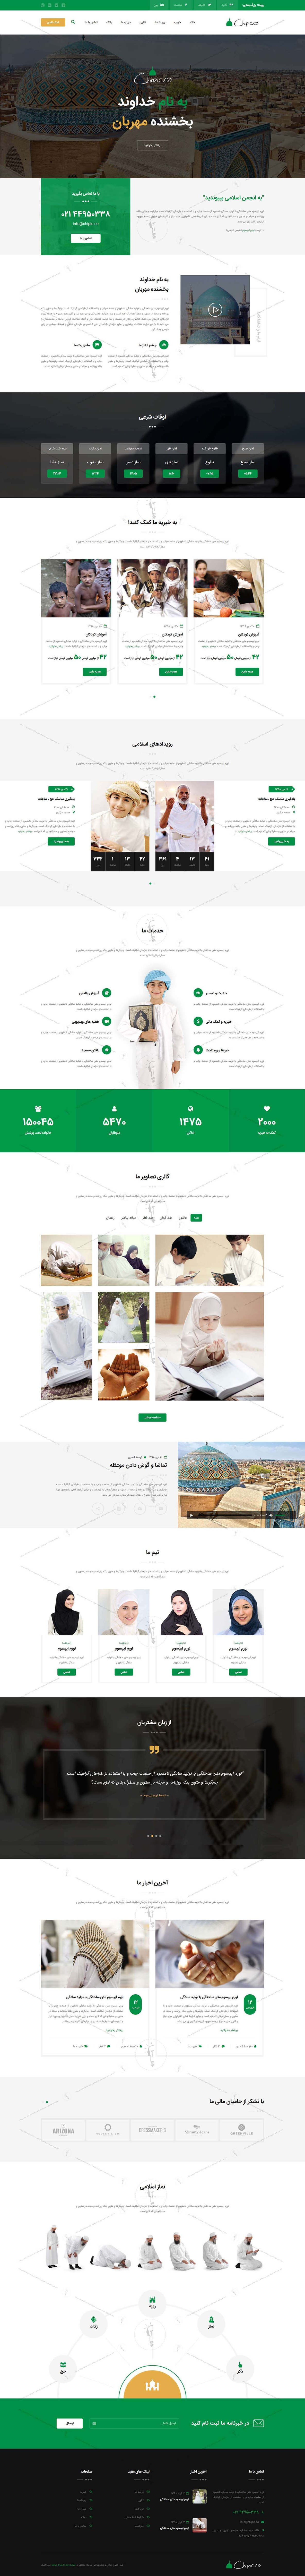 خرید قالب سایت و طراحی سایت مذهبی